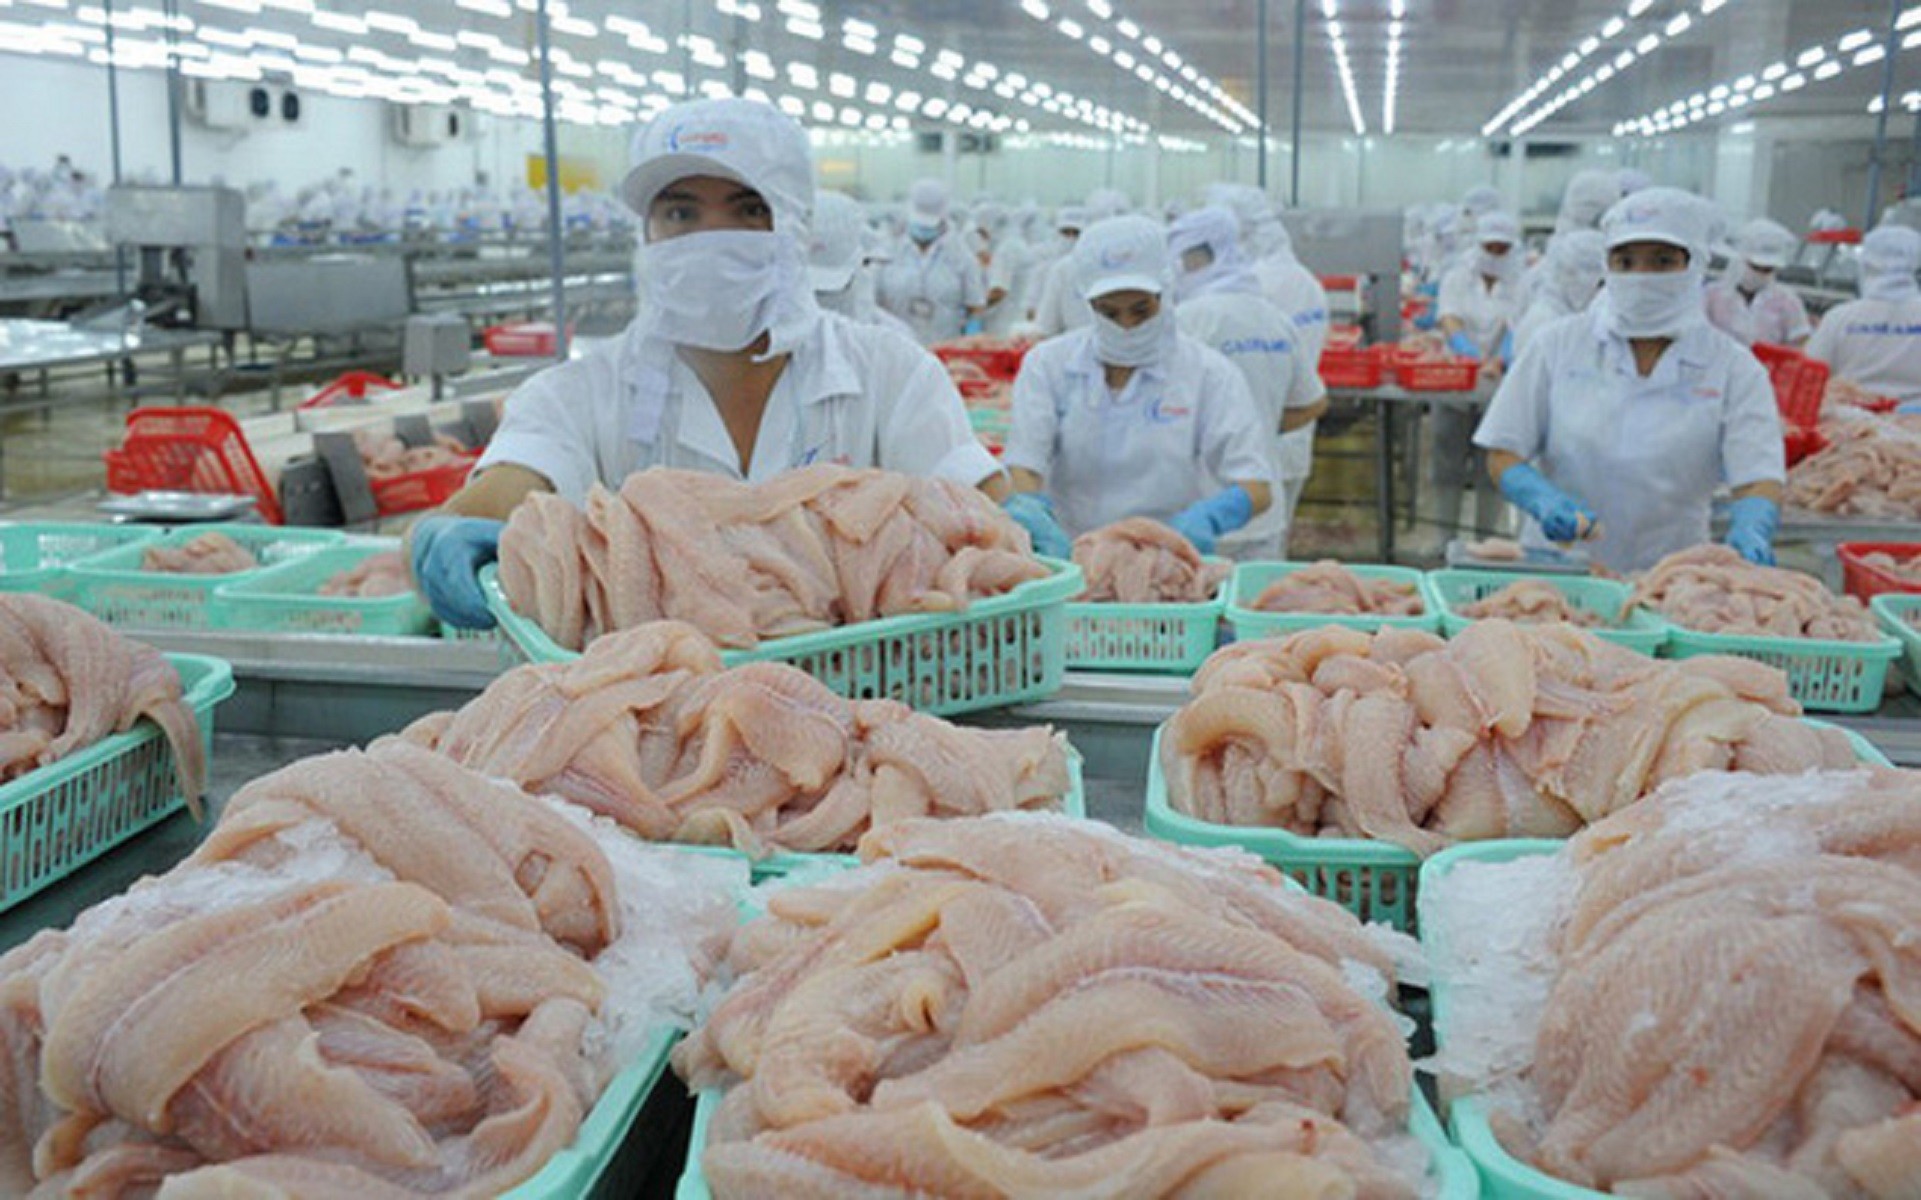 
Biến động thị trường năm 2022 ví dụ như lạm phát cùng chiến sự Nga - Ukraine cũng chính là cơ hội cho ngành cá tra xuất khẩu Việt Nam khi được lựa chọn cho việc thay thế cho cá minh thái cũng như cá tuyết ở một số thị trường lớn
